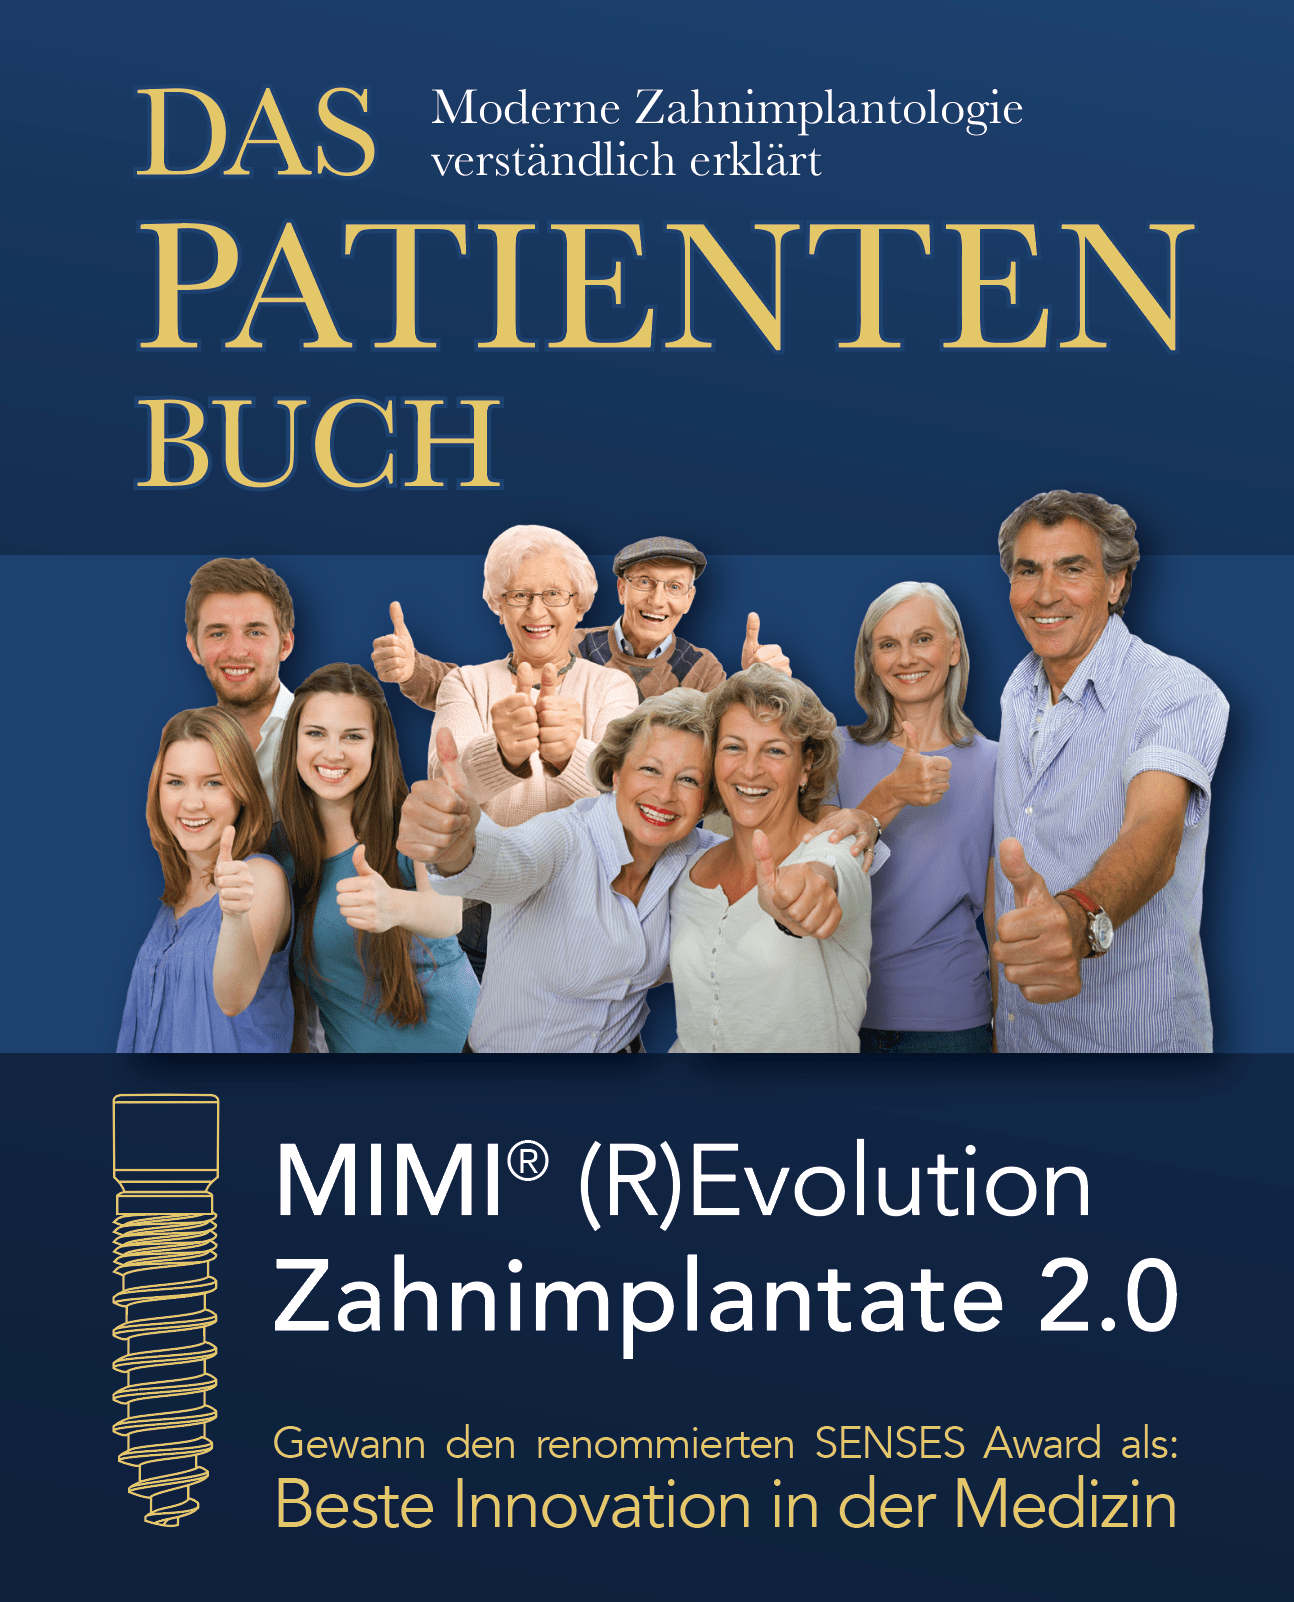 Das Patientenbuch - MIMI®-(R)Evolution Zahnimplantate 2.0